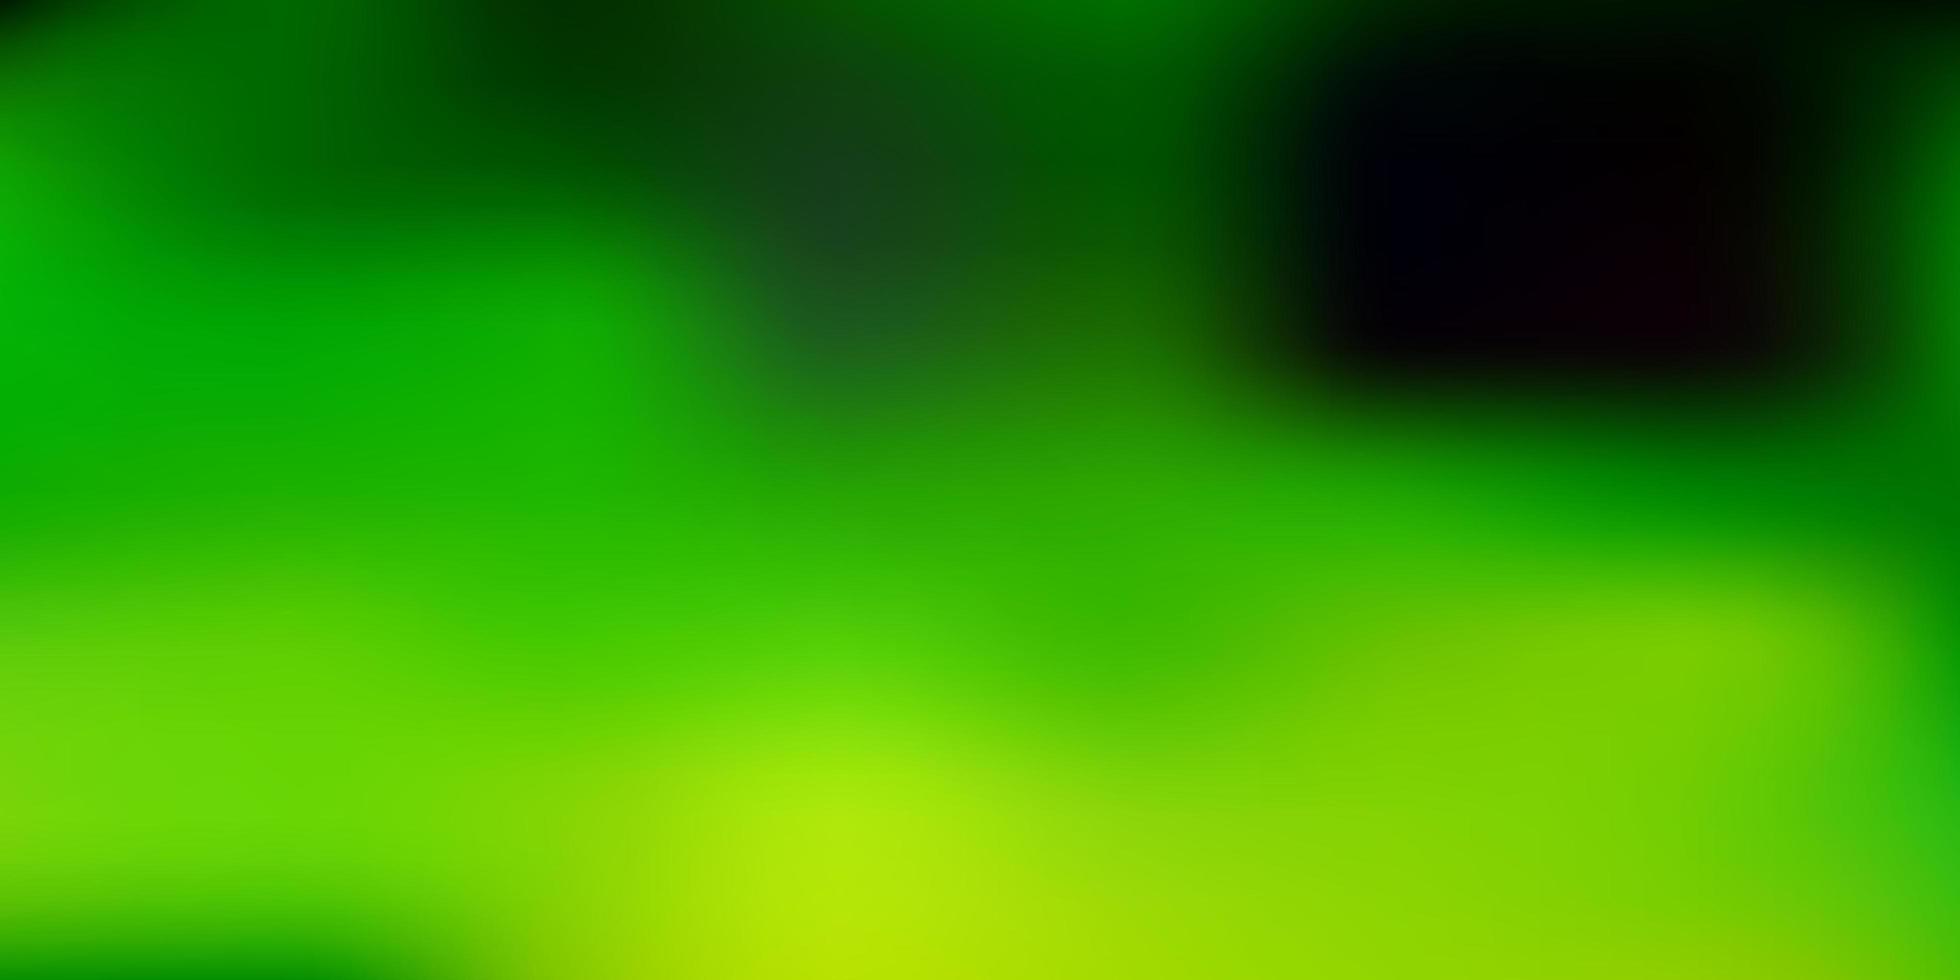 hellgrüner, gelber Vektor unscharfer Hintergrund.